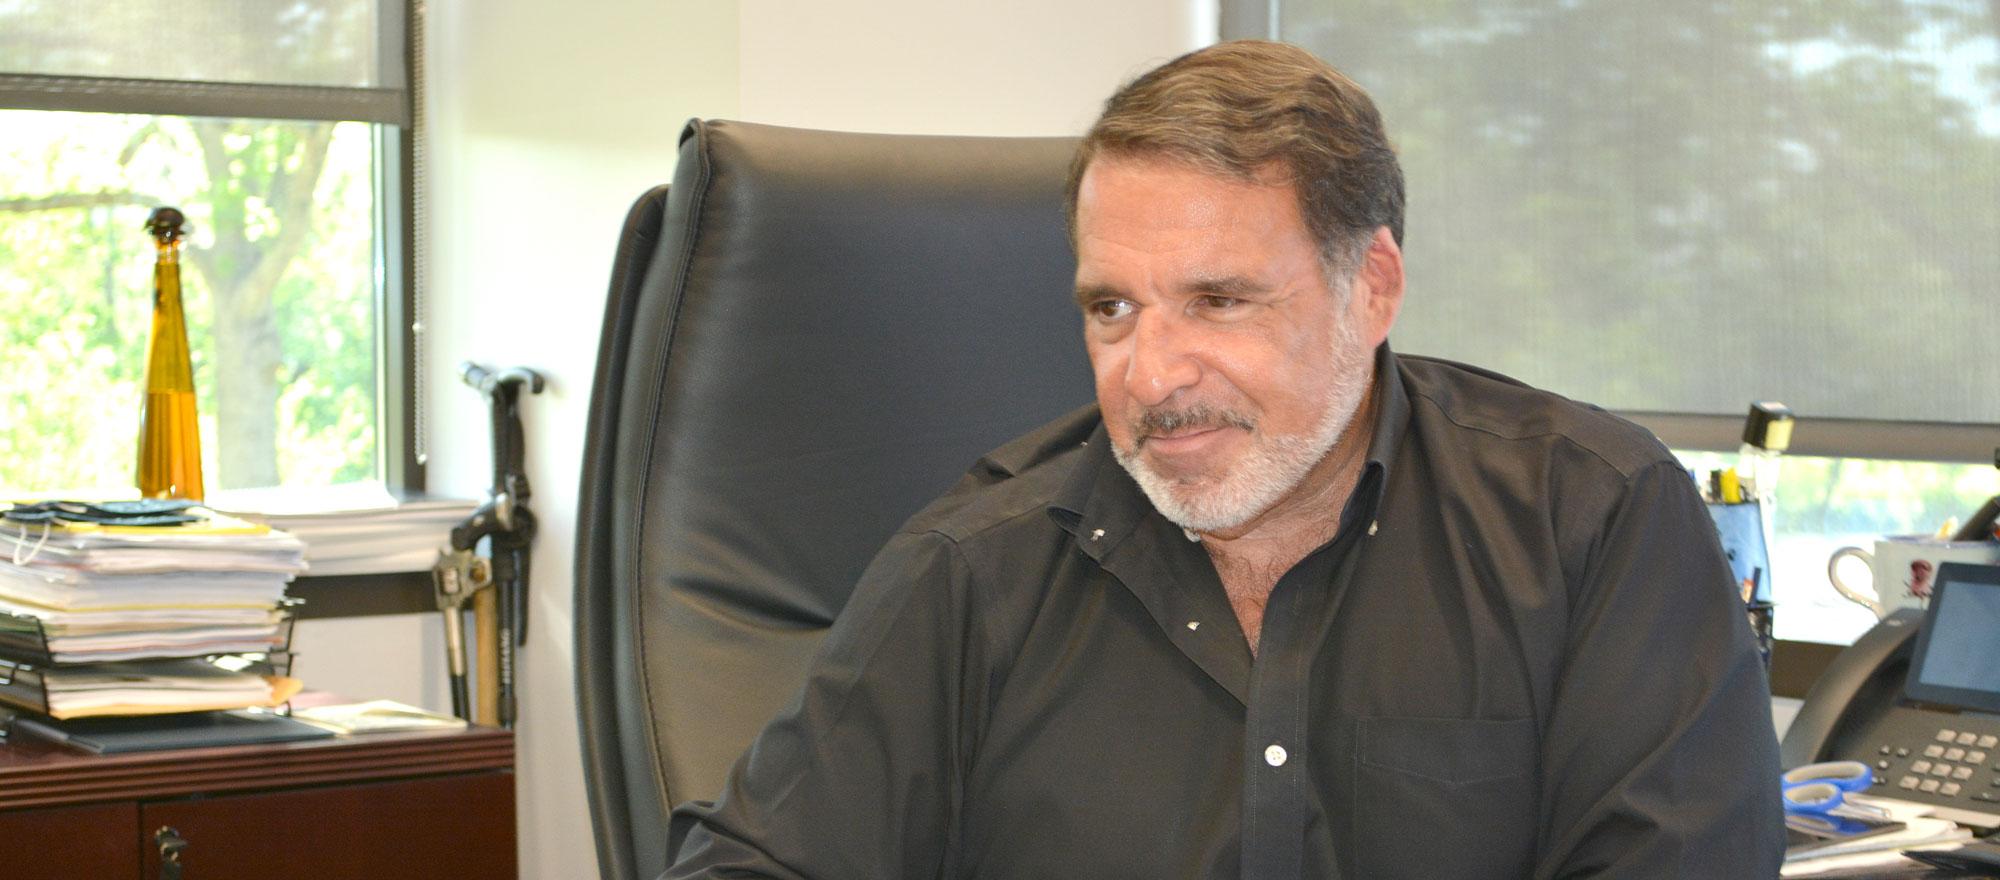 Dr. Robert Hariri